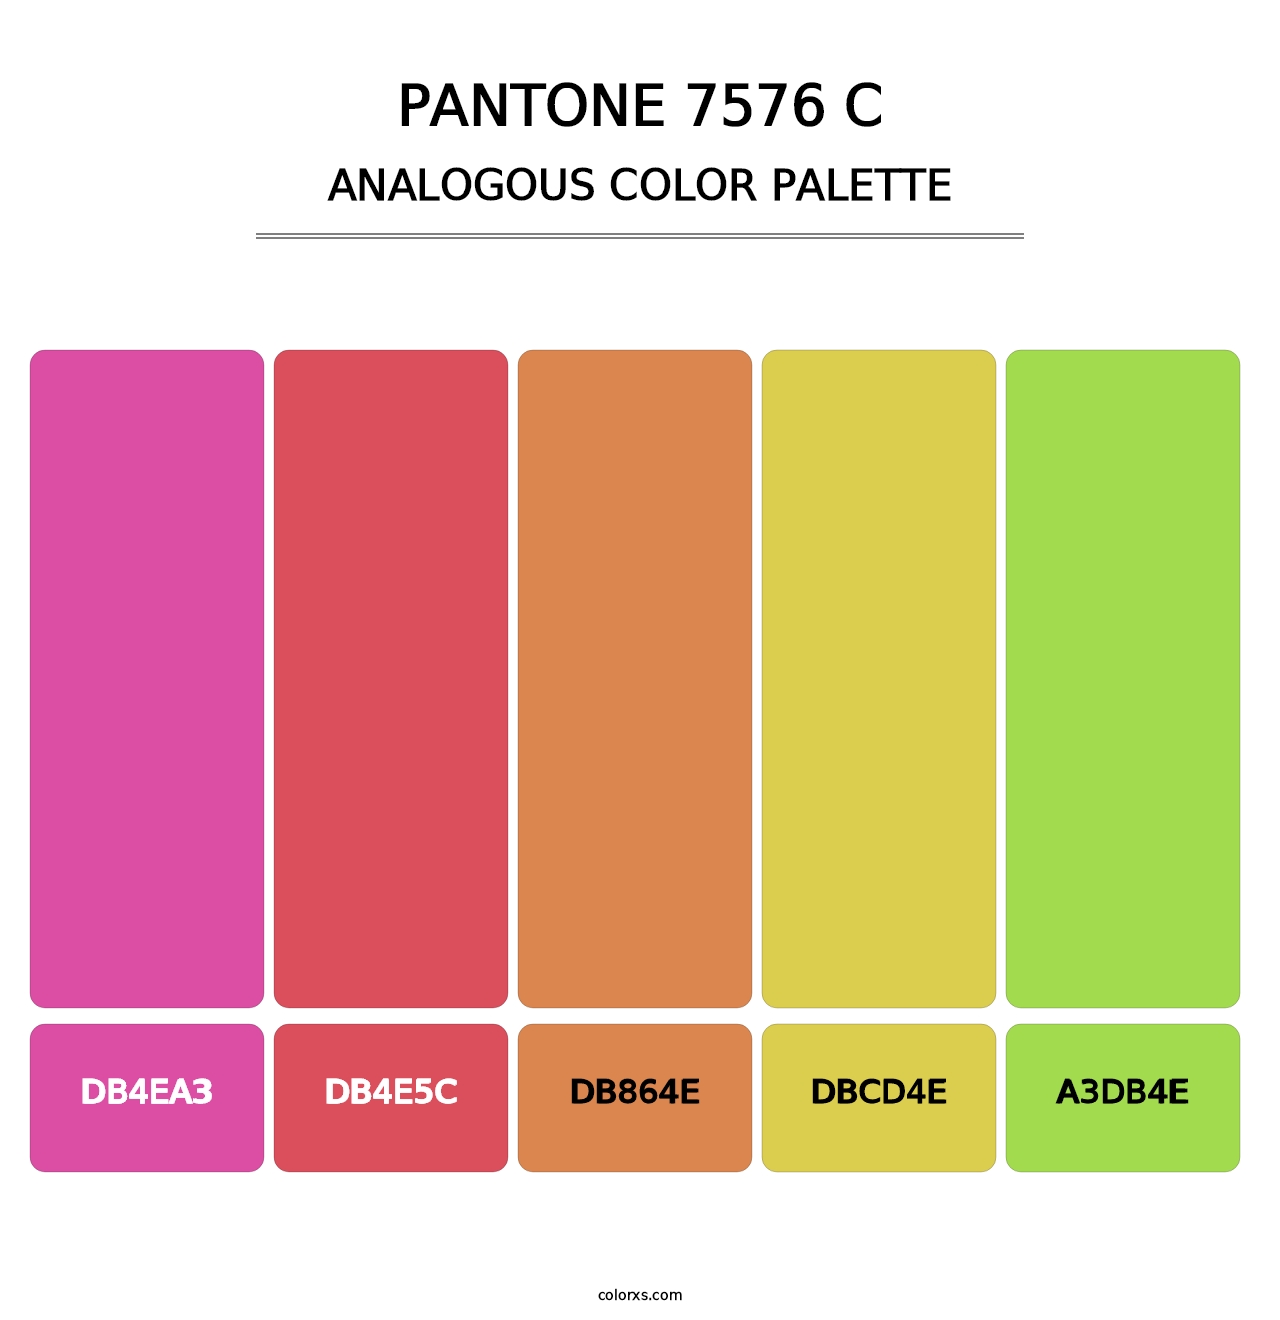 PANTONE 7576 C - Analogous Color Palette